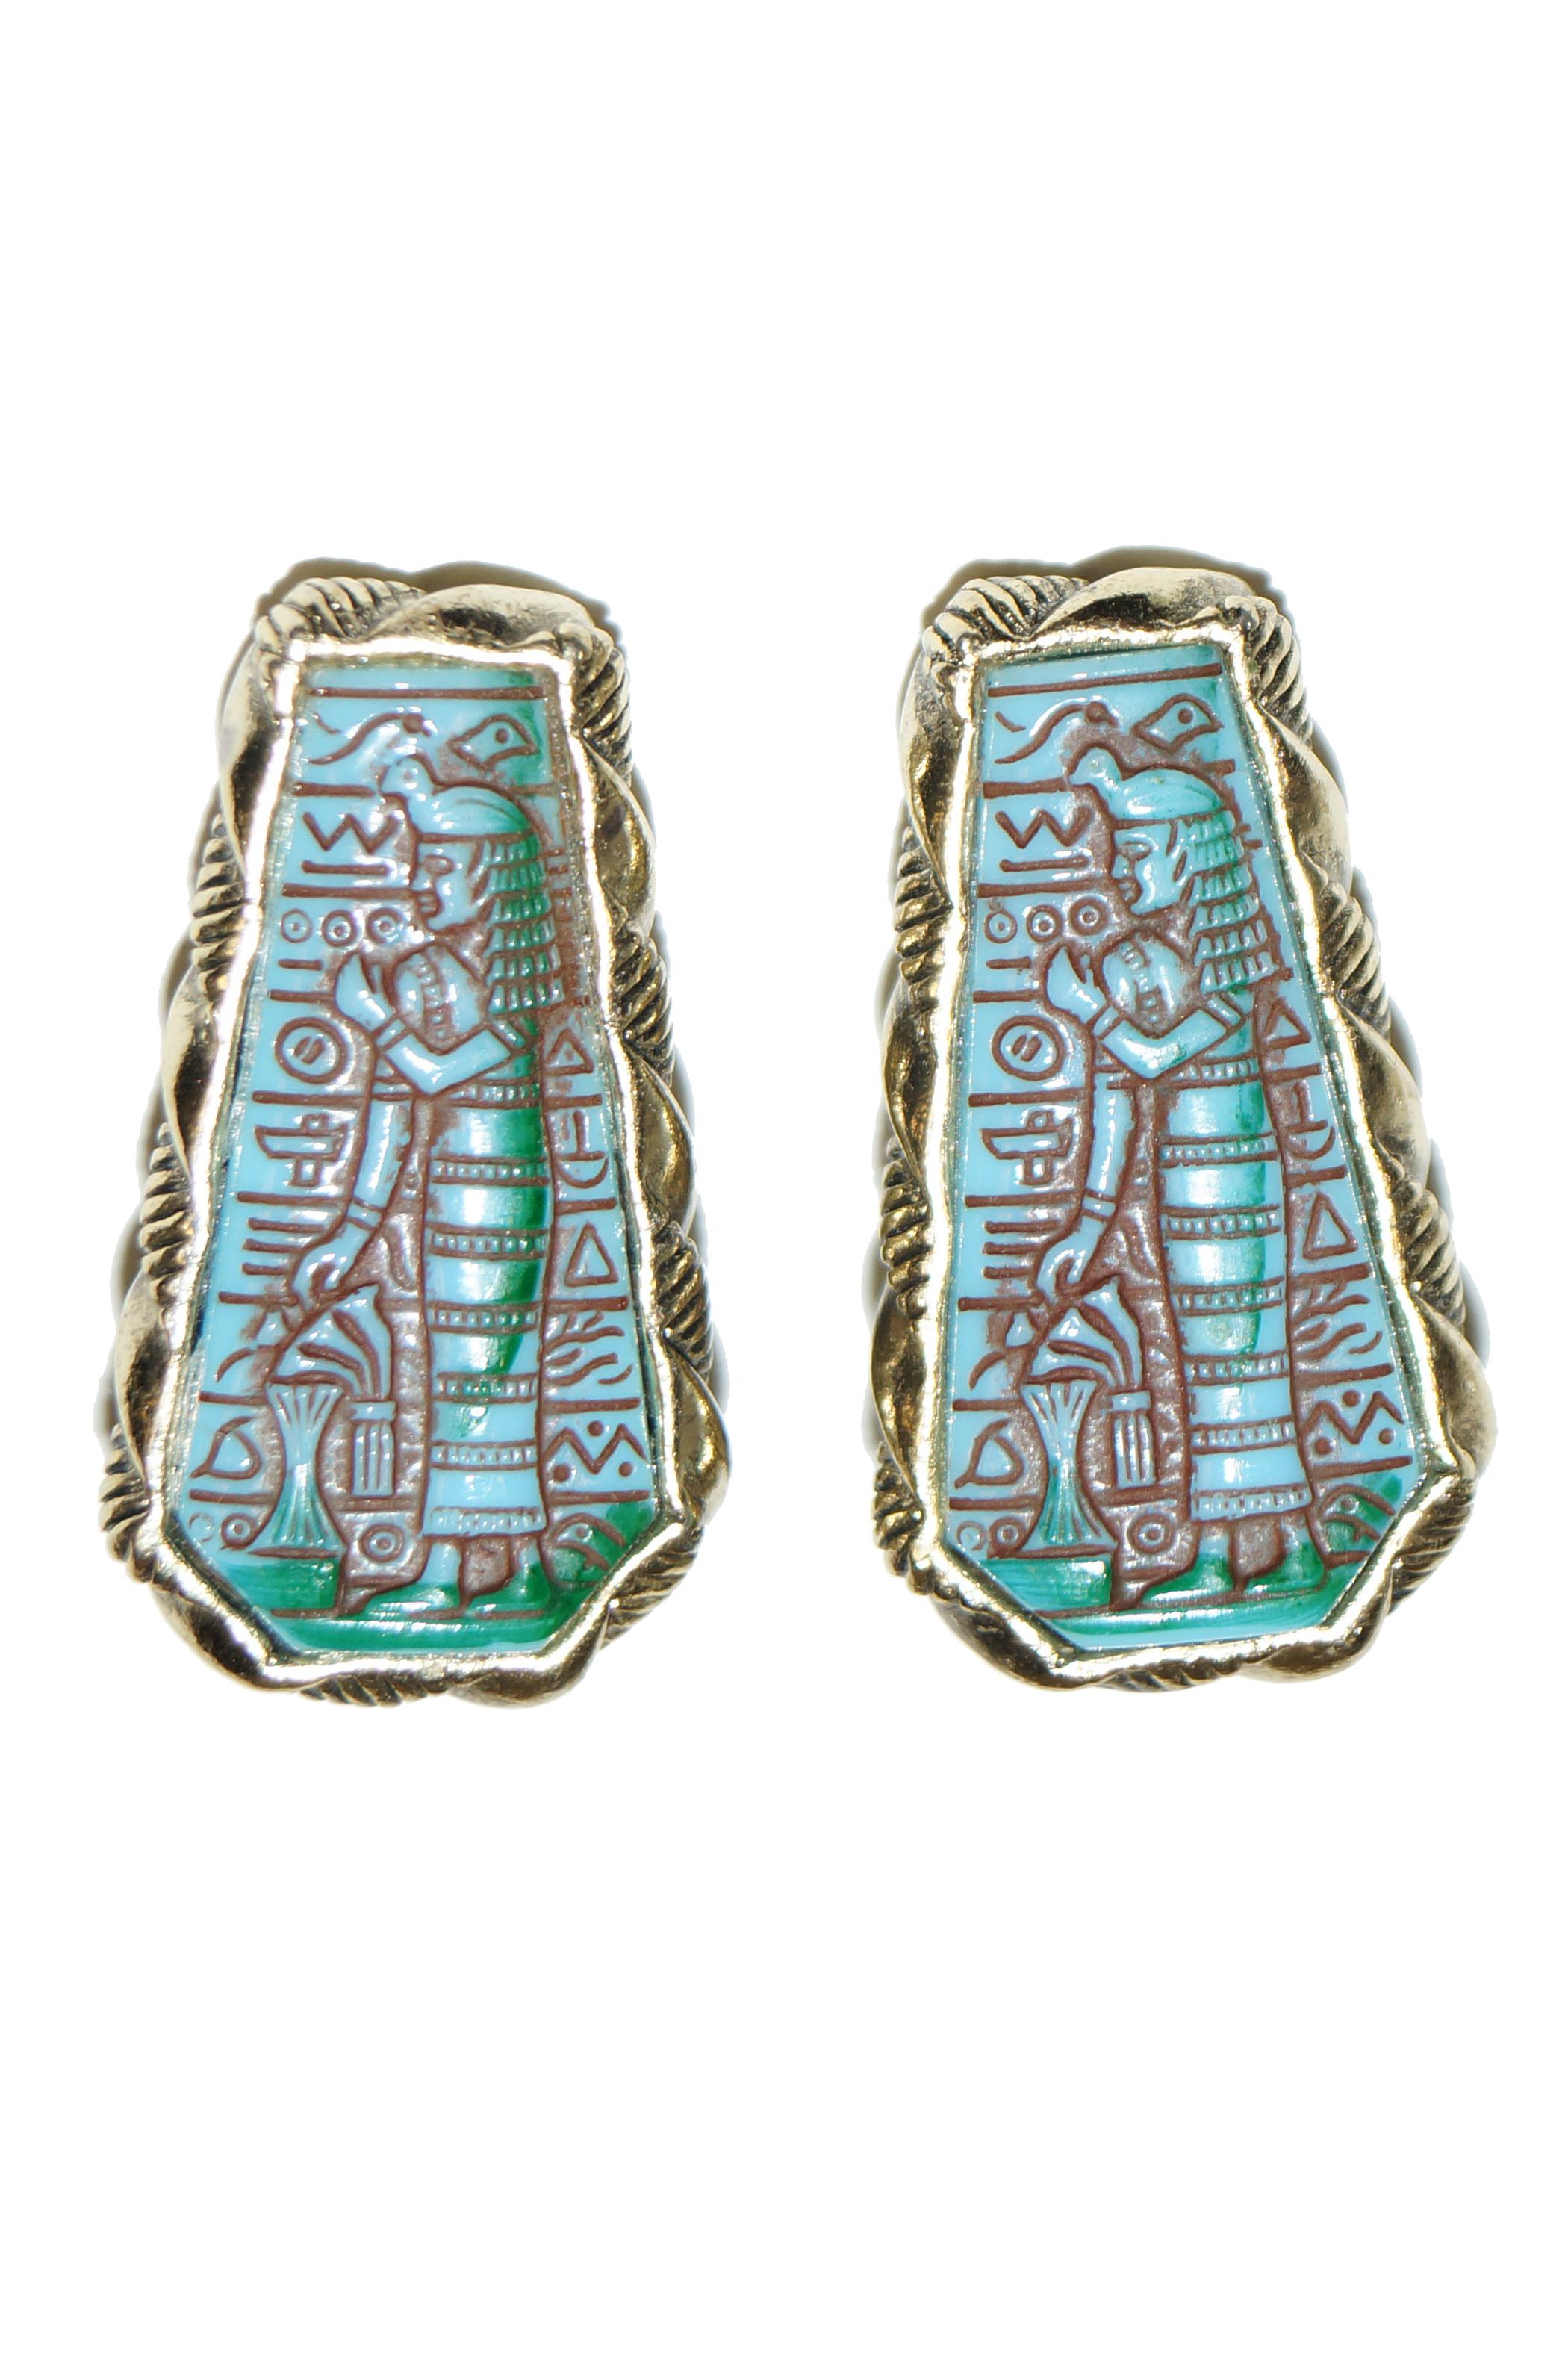 1970s Whiting & Davis Egyptian Revival Pharaoh Bracelet and Earrings For Sale 4